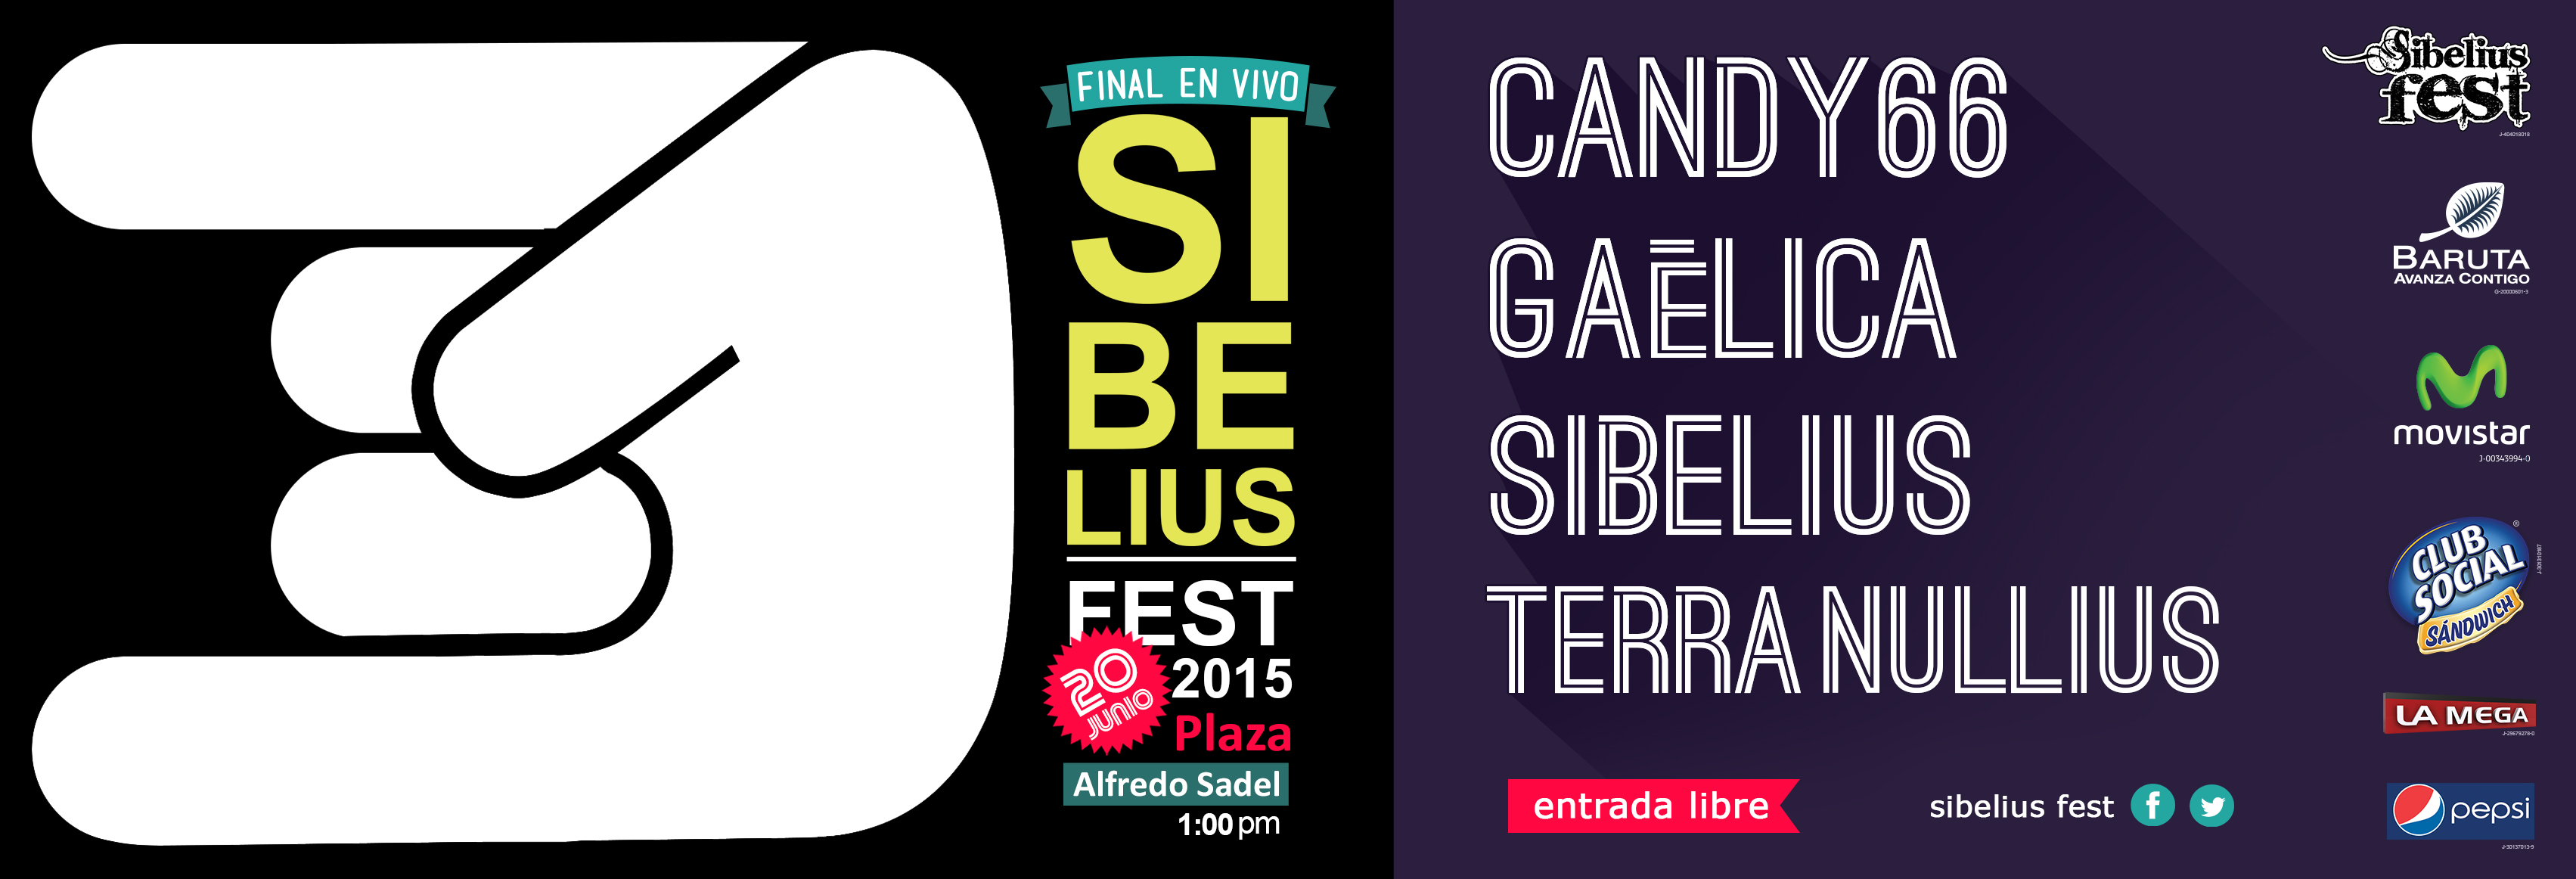 La VI Edición del Sibelius Fest 2015 llega en el mes de Junio